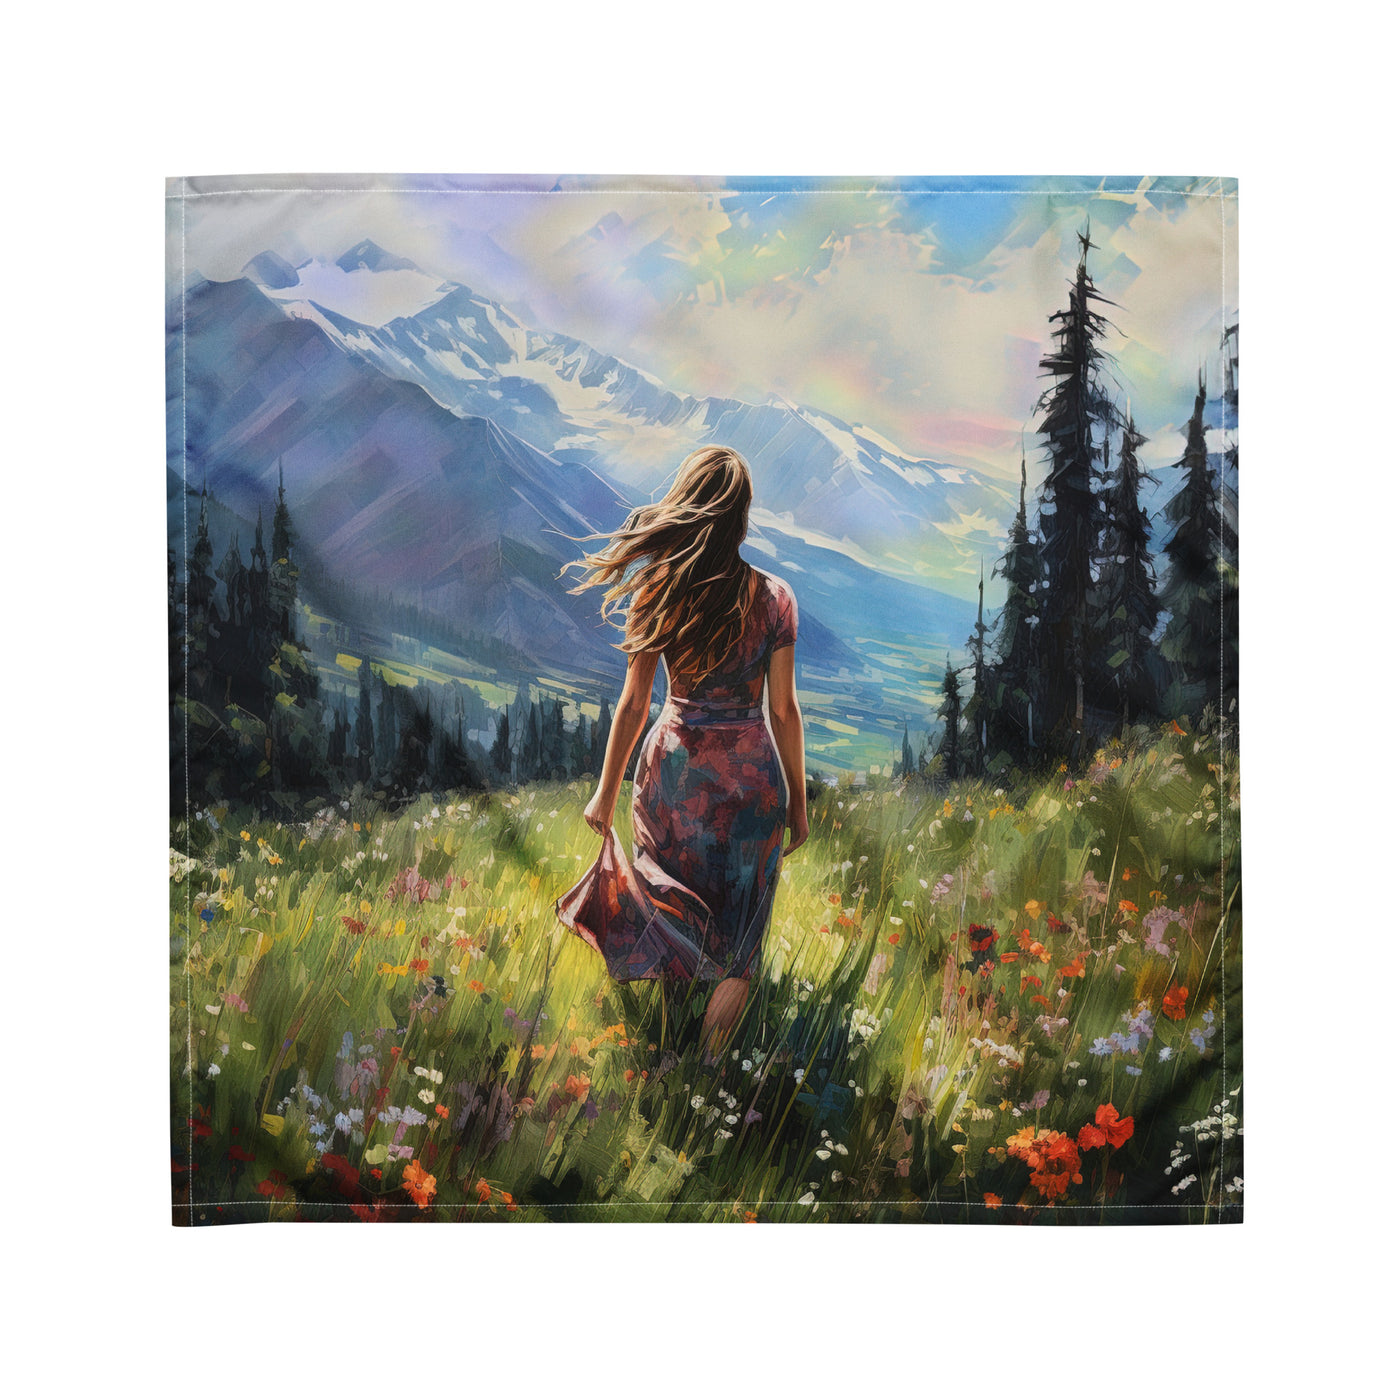 Frau mit langen Kleid im Feld mit Blumen - Berge im Hintergrund - Malerei - Bandana (All-Over Print) berge xxx M